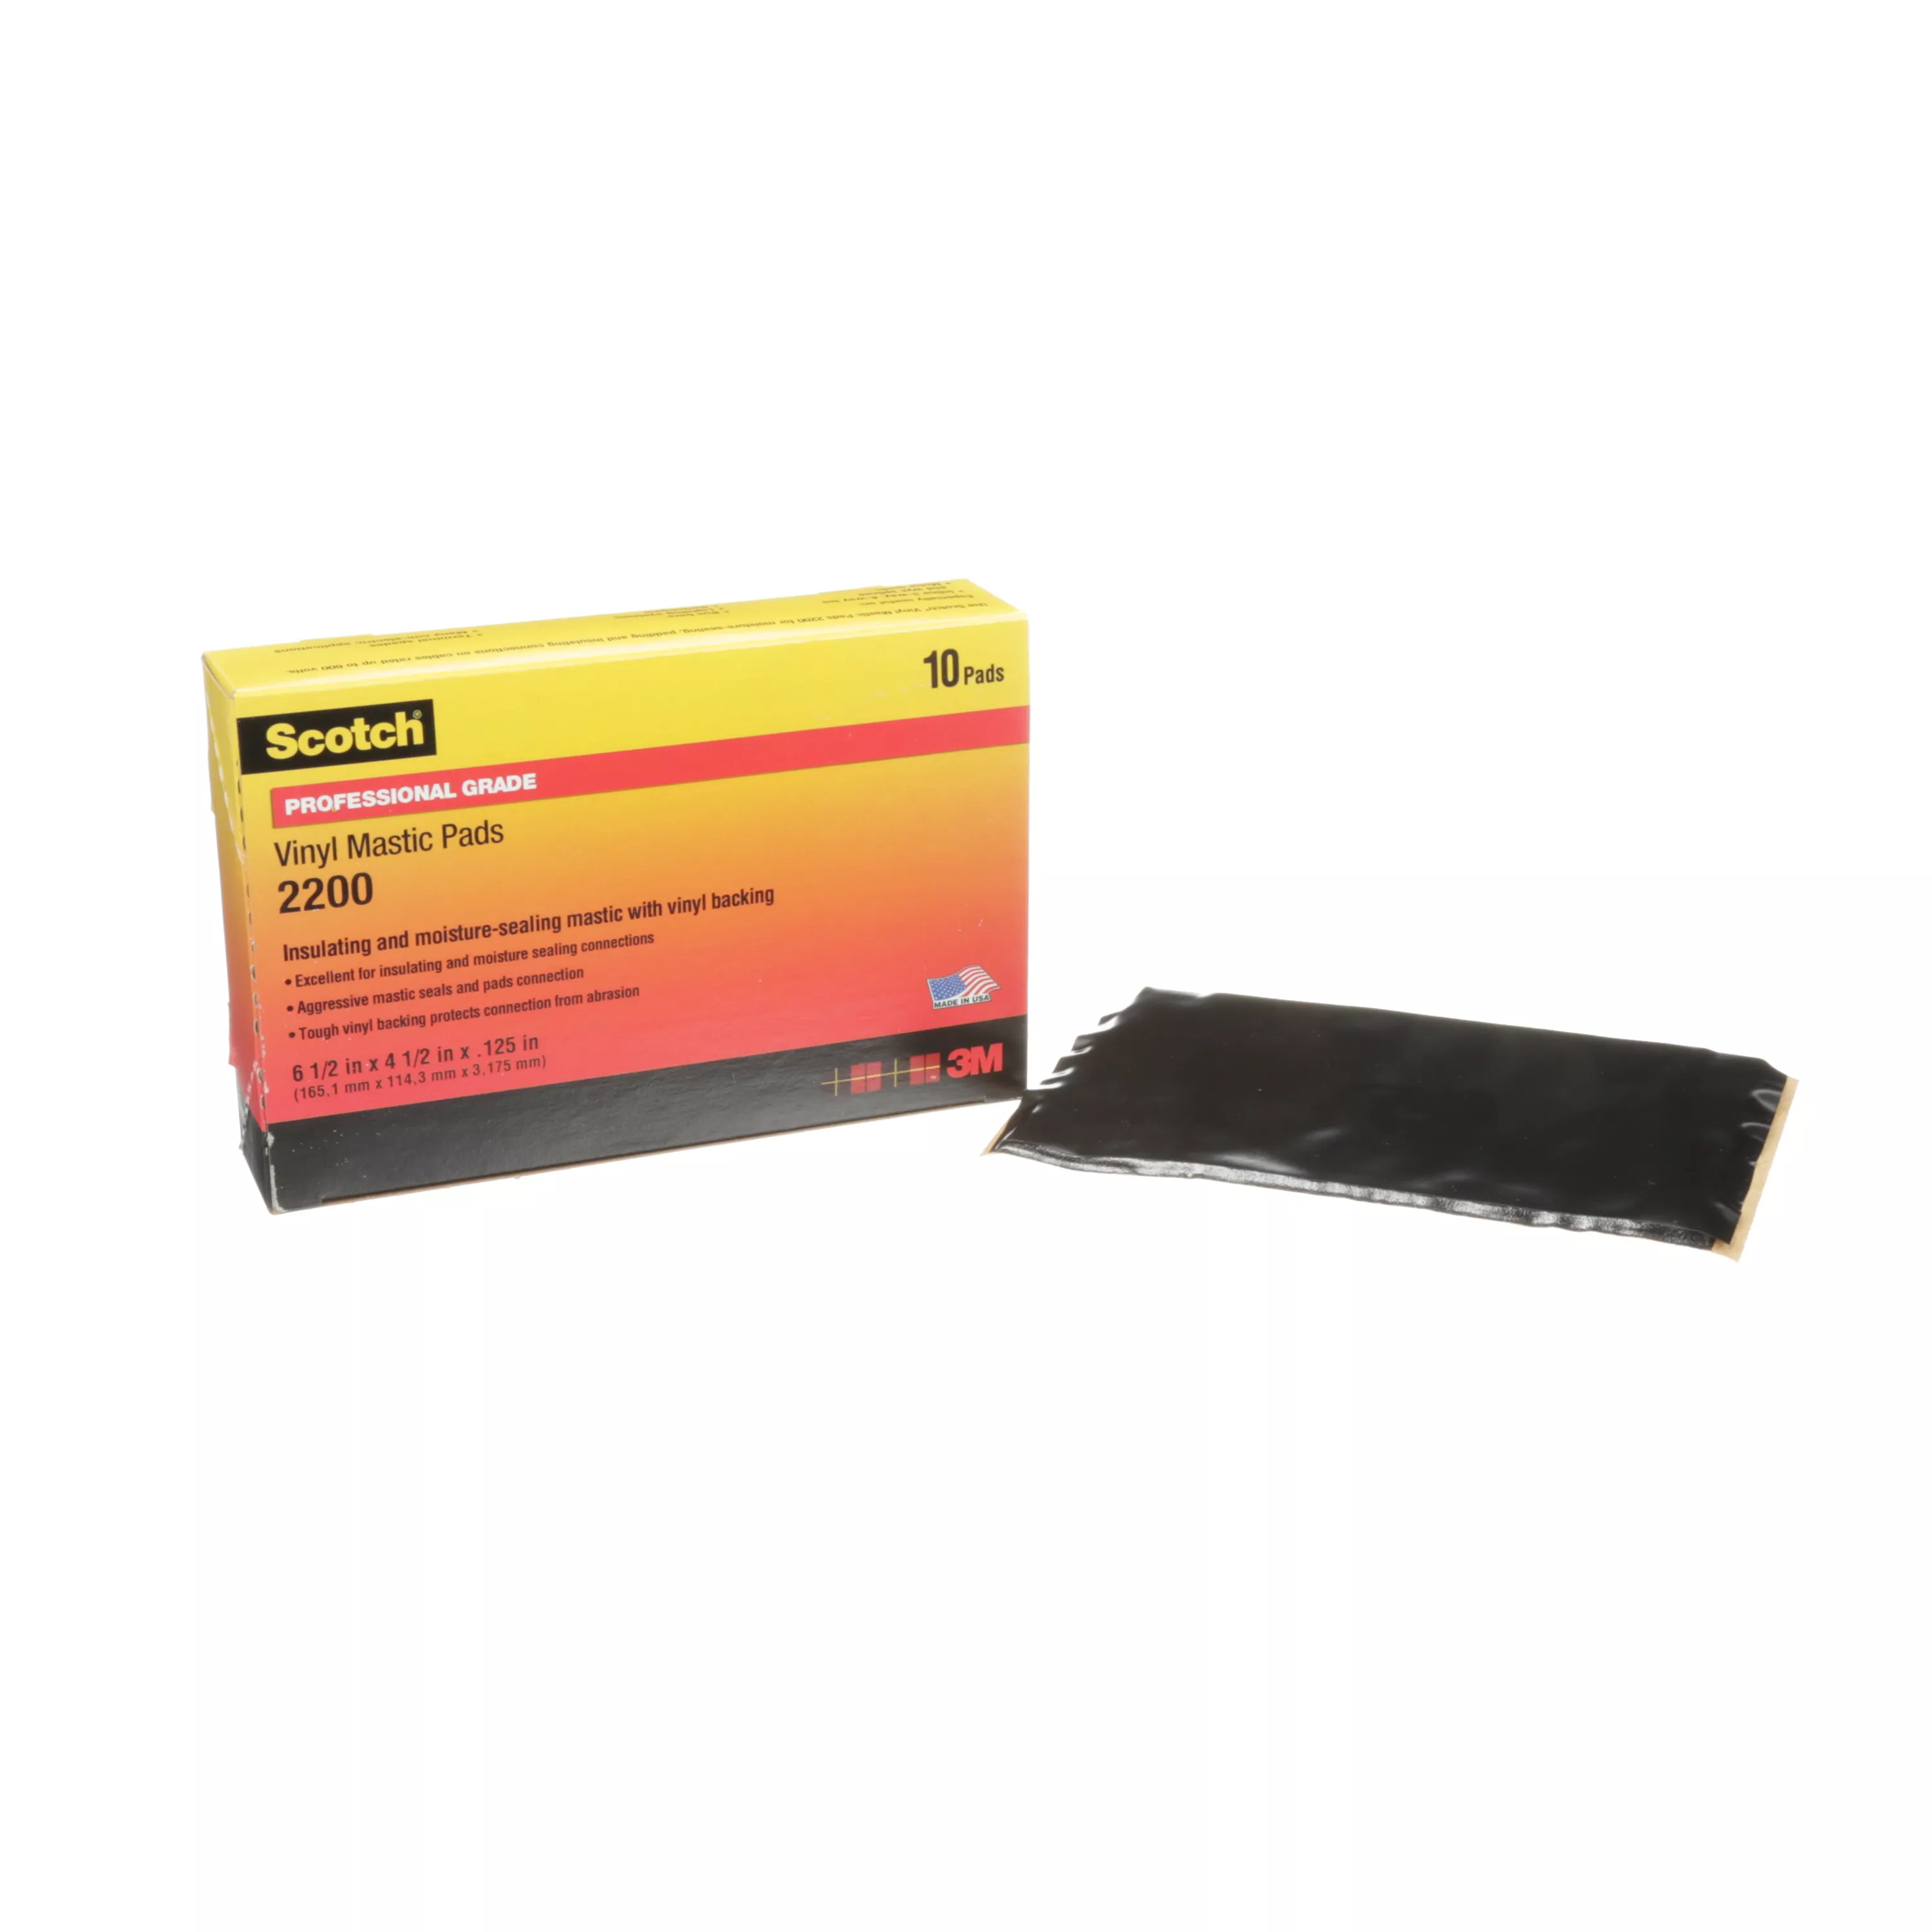 Scotch® Vinyl Mastic Pad 2200, 6-1/2 in x 4-1/2 in, Black, 10
pads/carton, 50 pads/Case